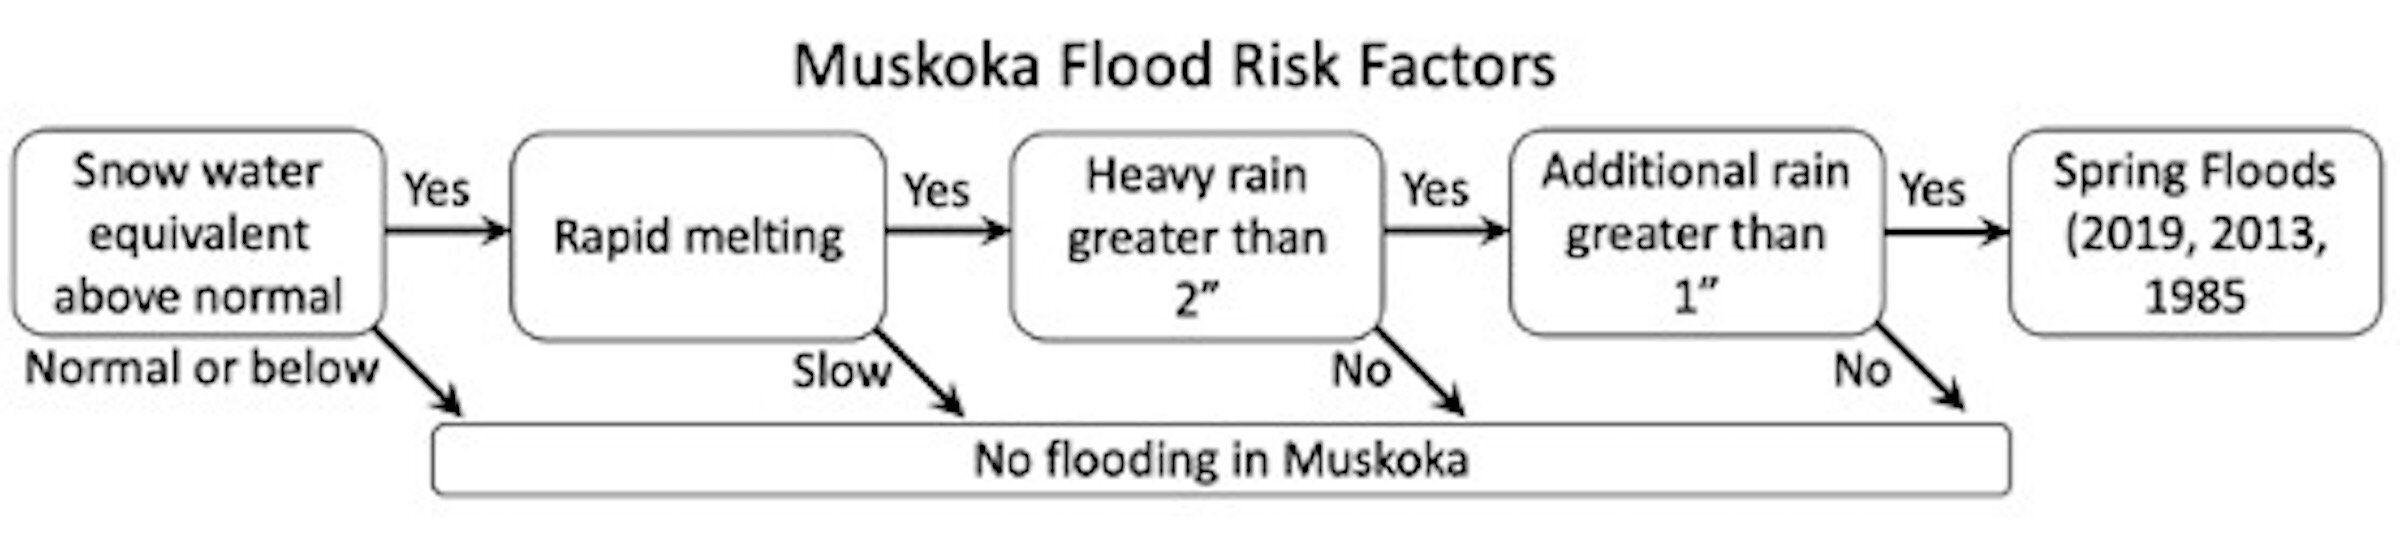 Flow chart of flood risk factors in the Muskoka region.